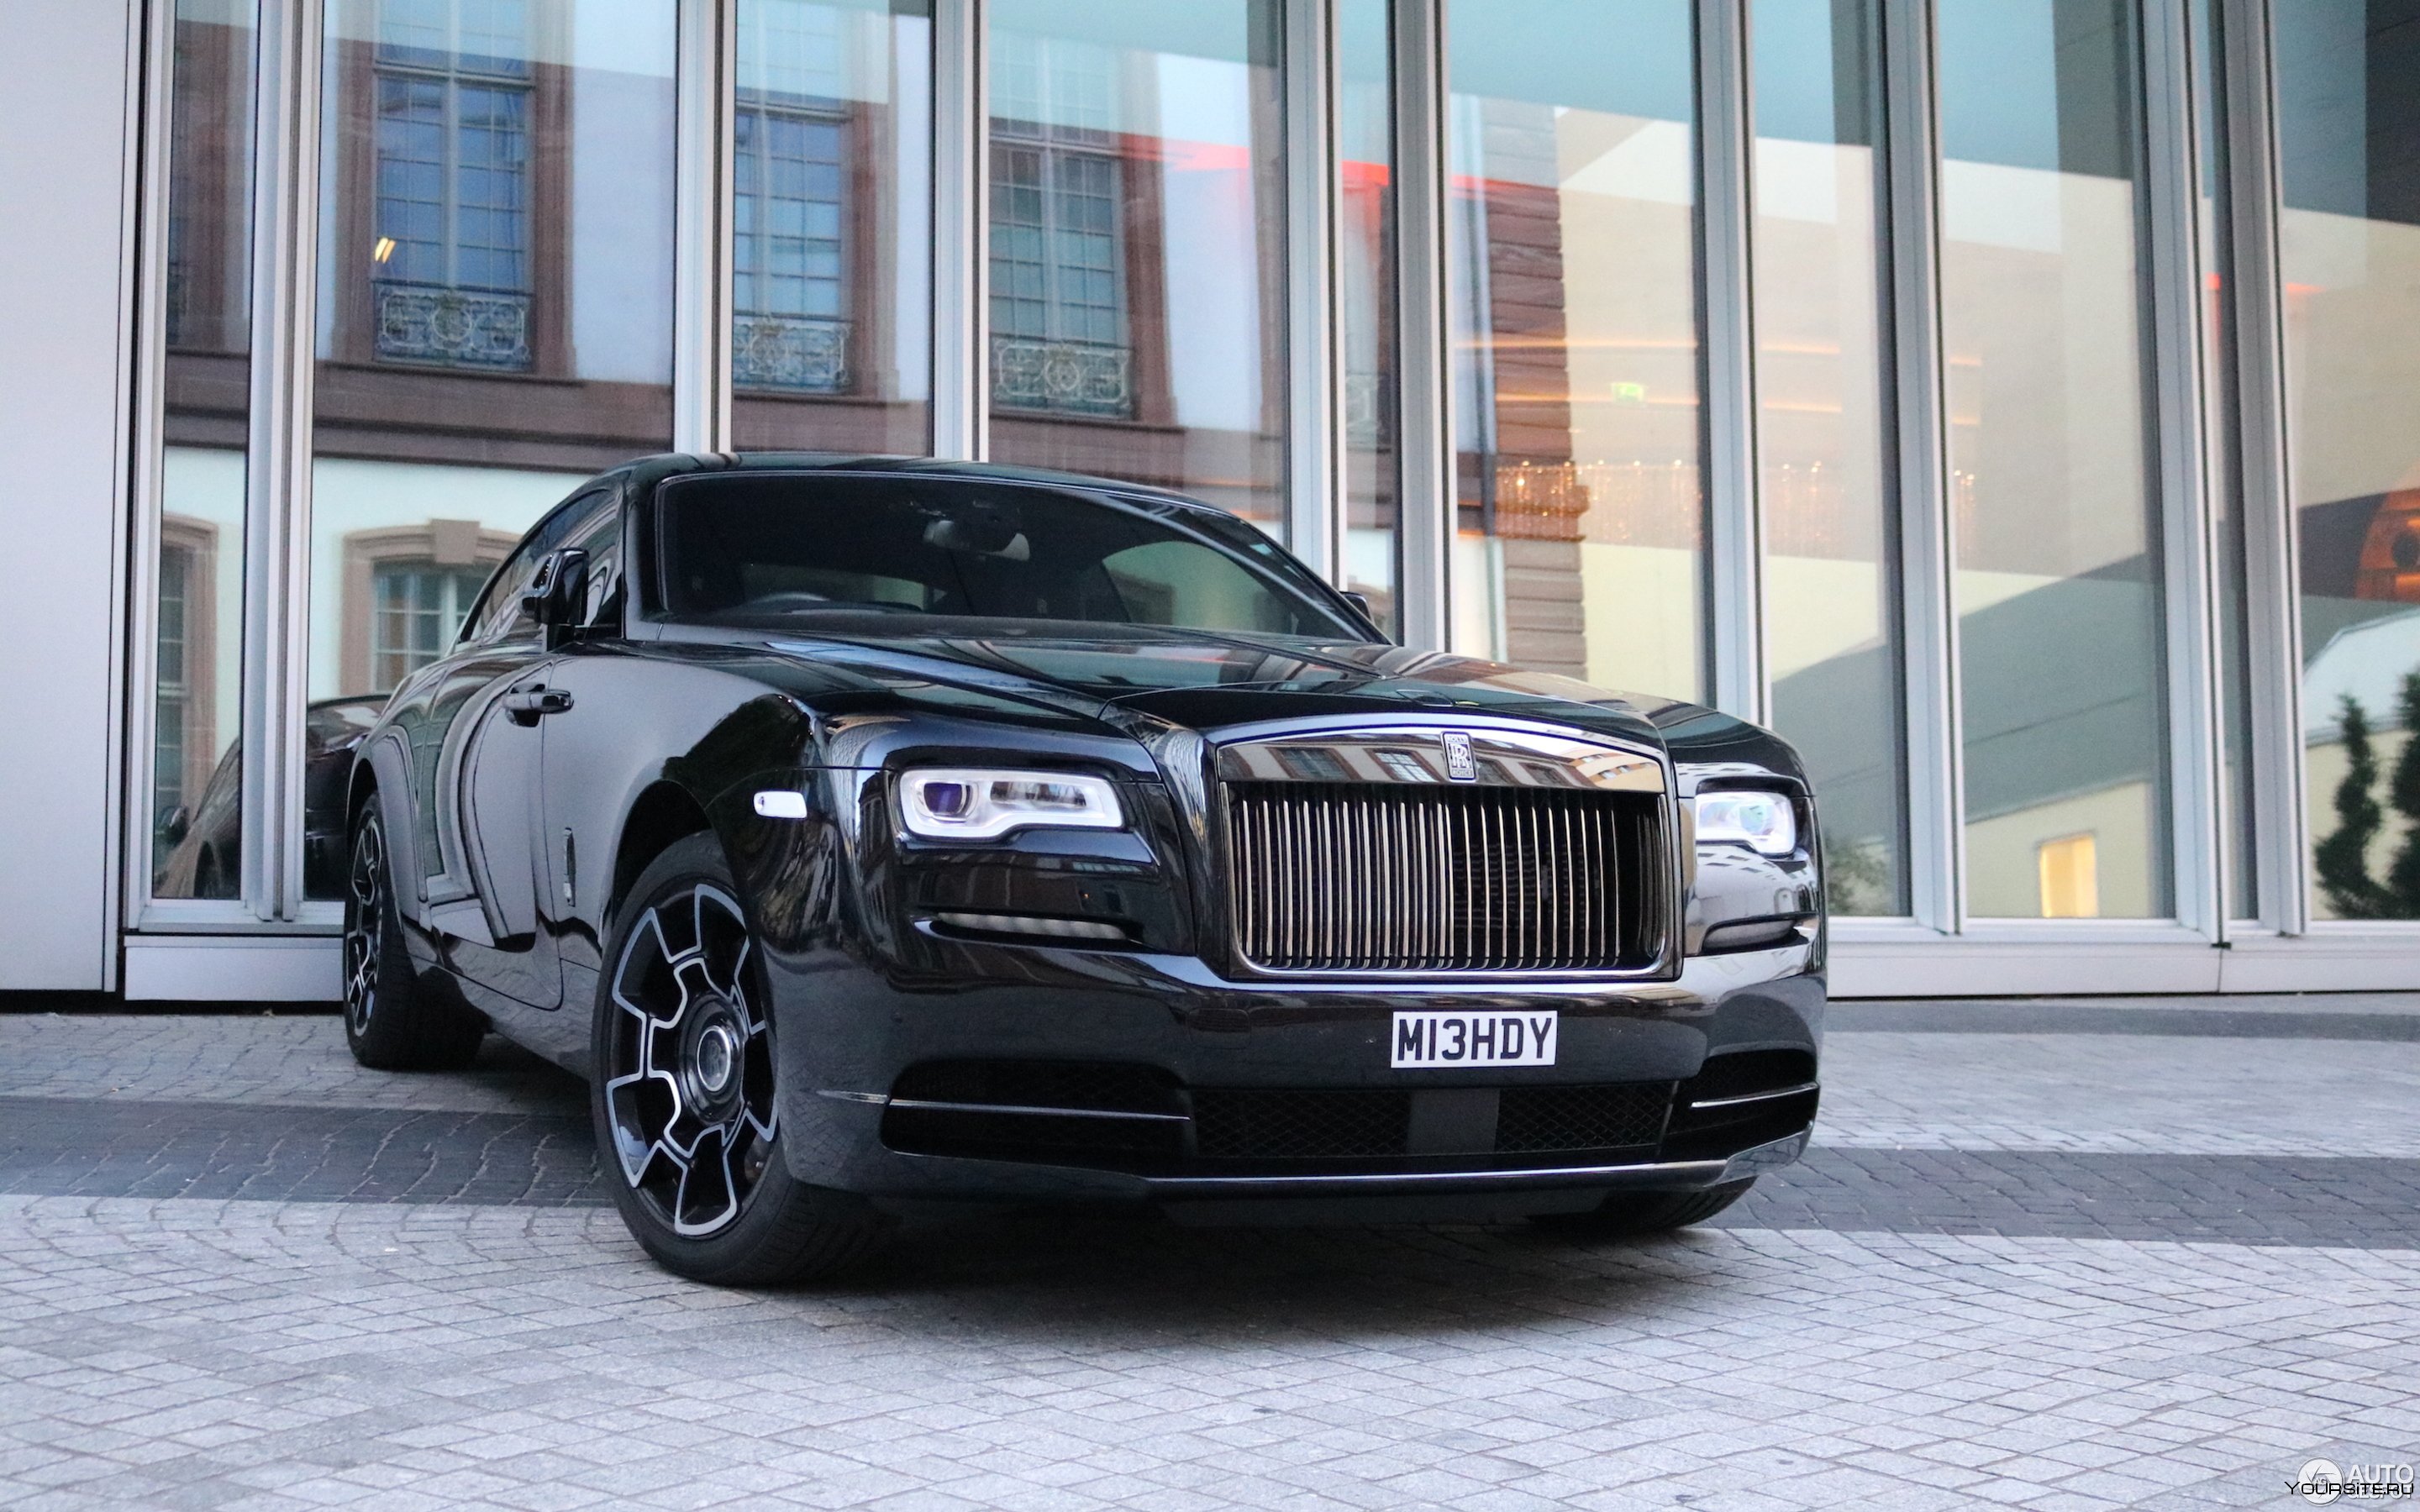 Роллс врайт. Черный Роллс Ройс. Роллс Ройс врайт. Rolls Royce Wraith Black badge. Роллс Ройс врайт 2010.